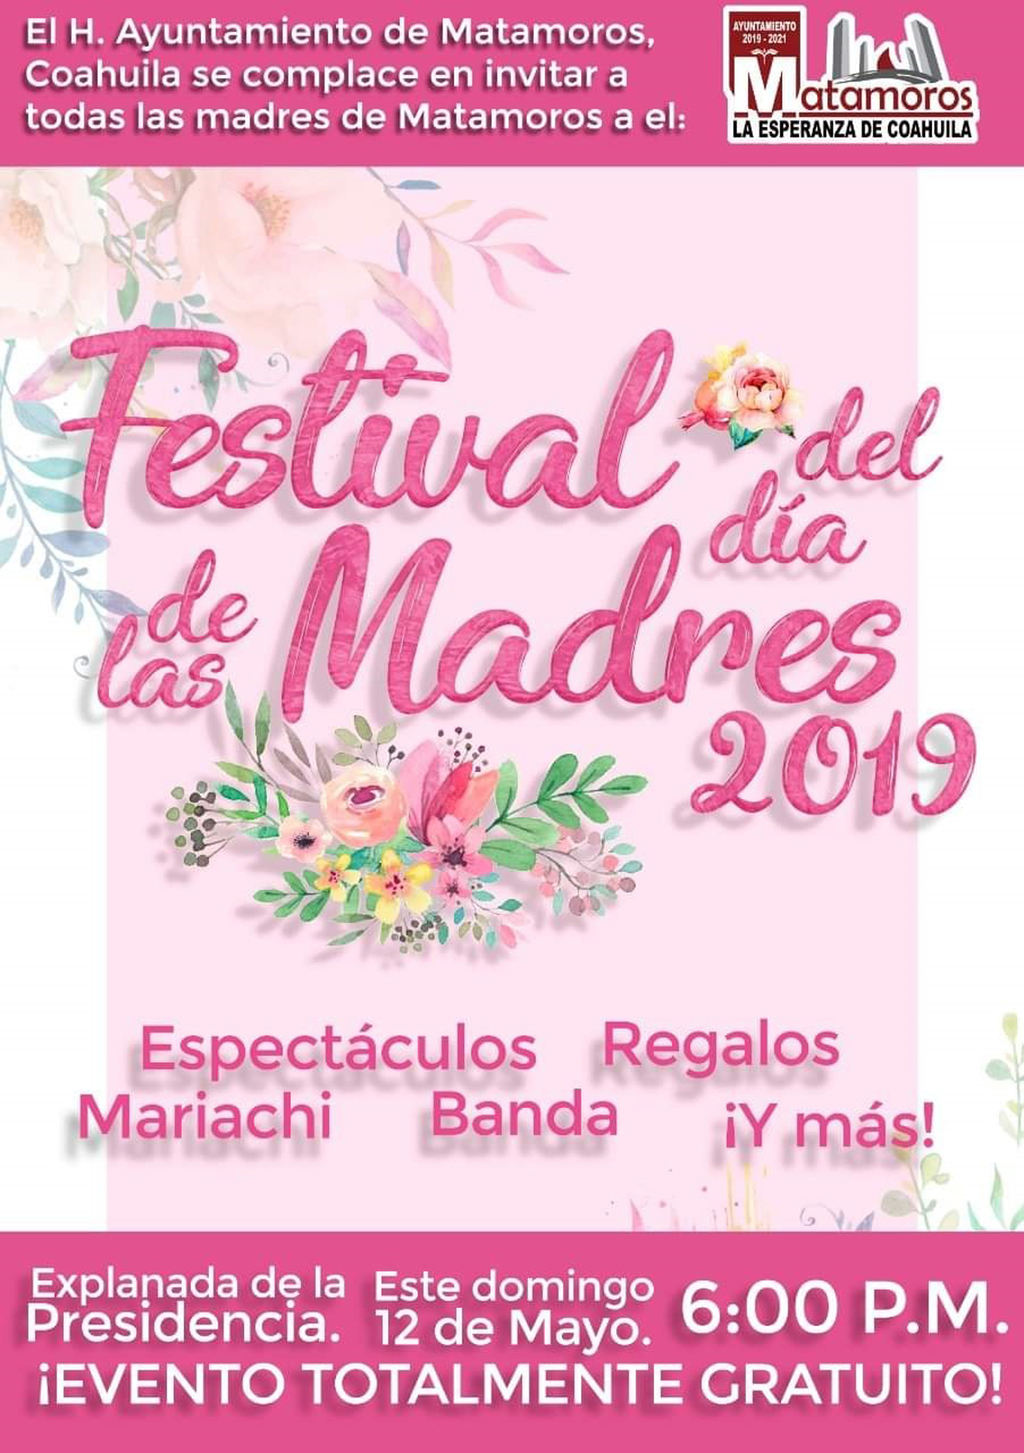 Ayuntamiento de Matamoros y Dirección de Cultura invitan a los eventos conmemorativos del Día de las Madres.